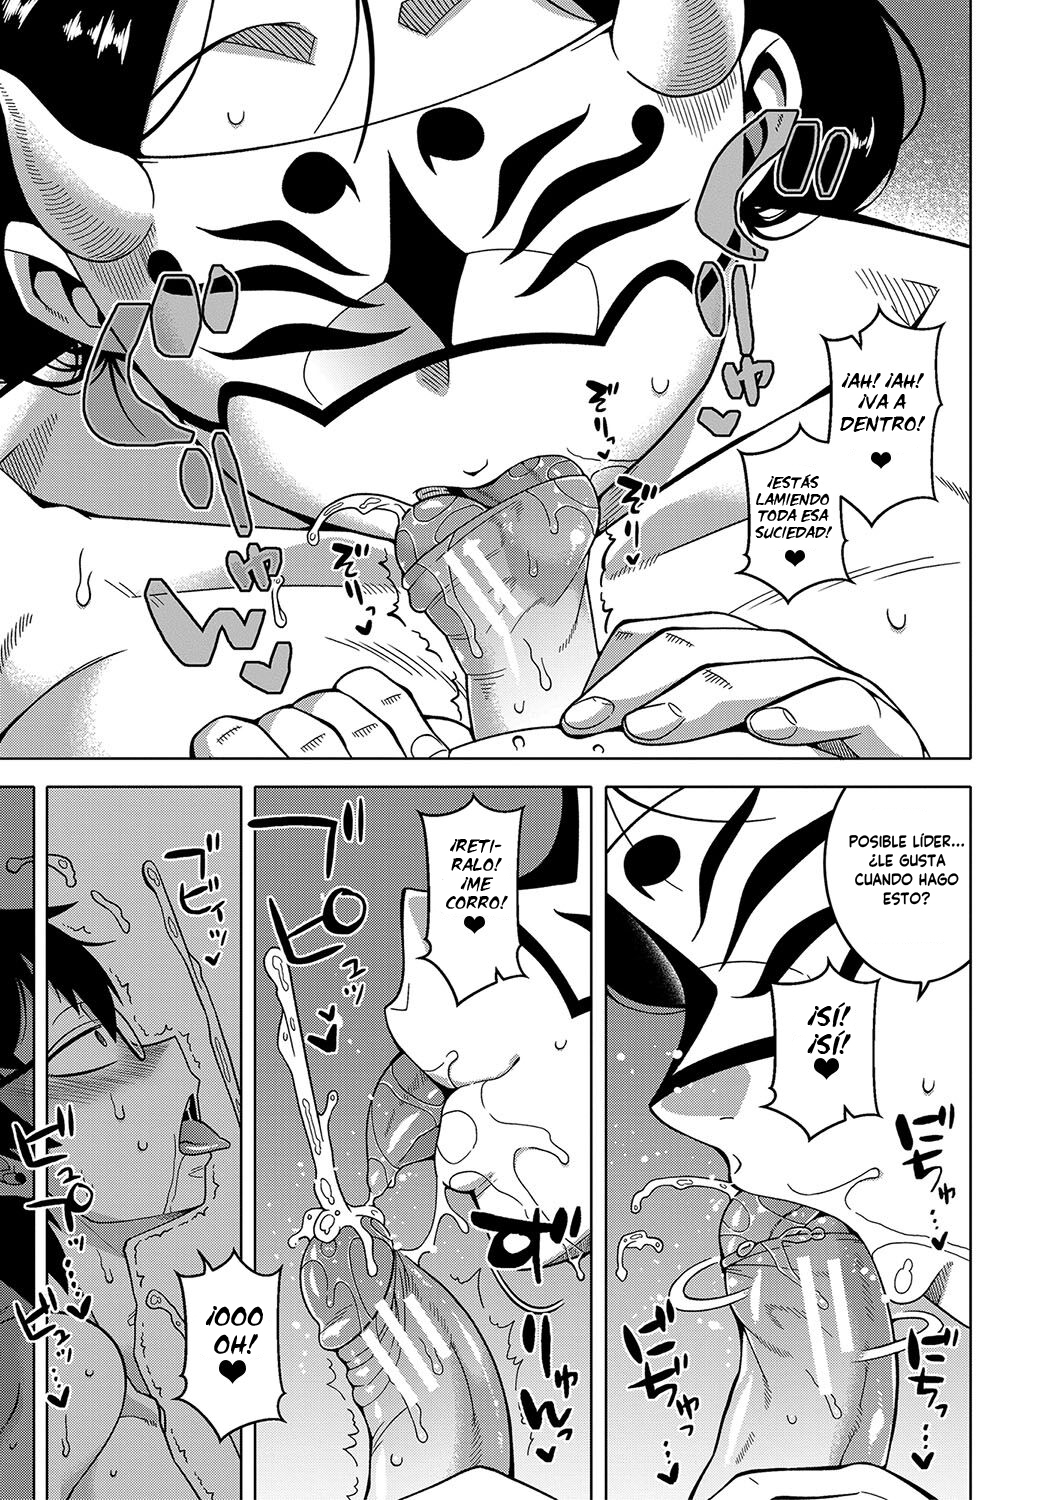 Manga KAMI-SAMA NO TSUKURIKATA-THE MAKING OF A CULT LEADER Chapter 1 image number 4